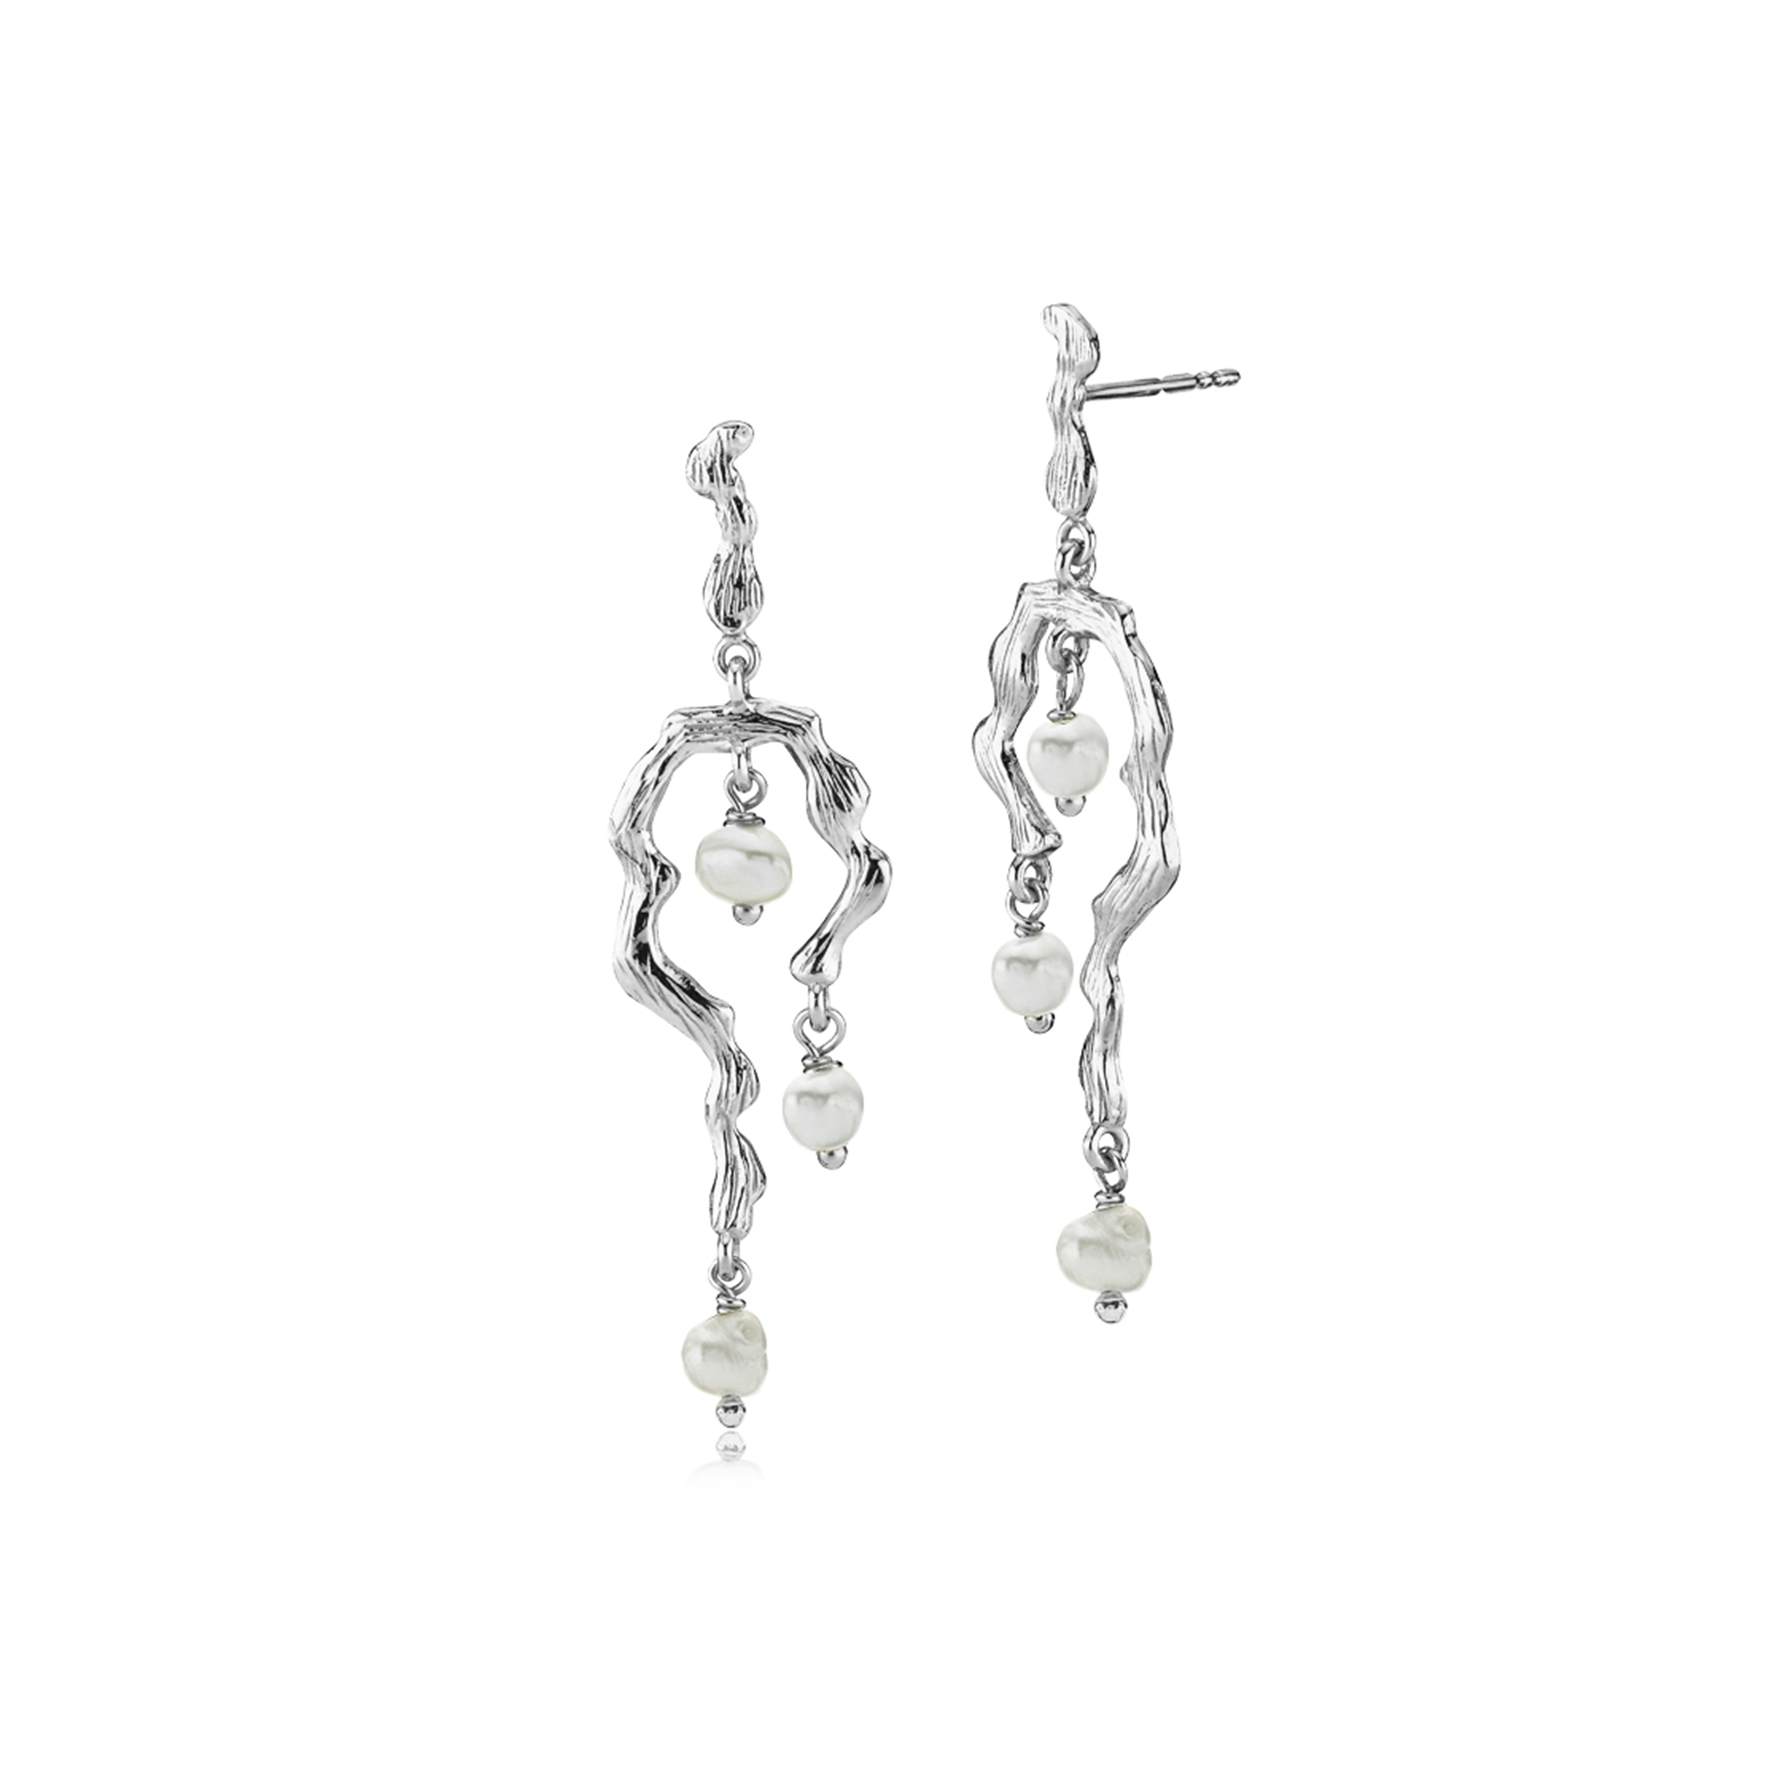 Lærke Bentsen By Sistie Long Earrings With Pearls von Sistie in Silber Sterling 925|Freshwater Pearl